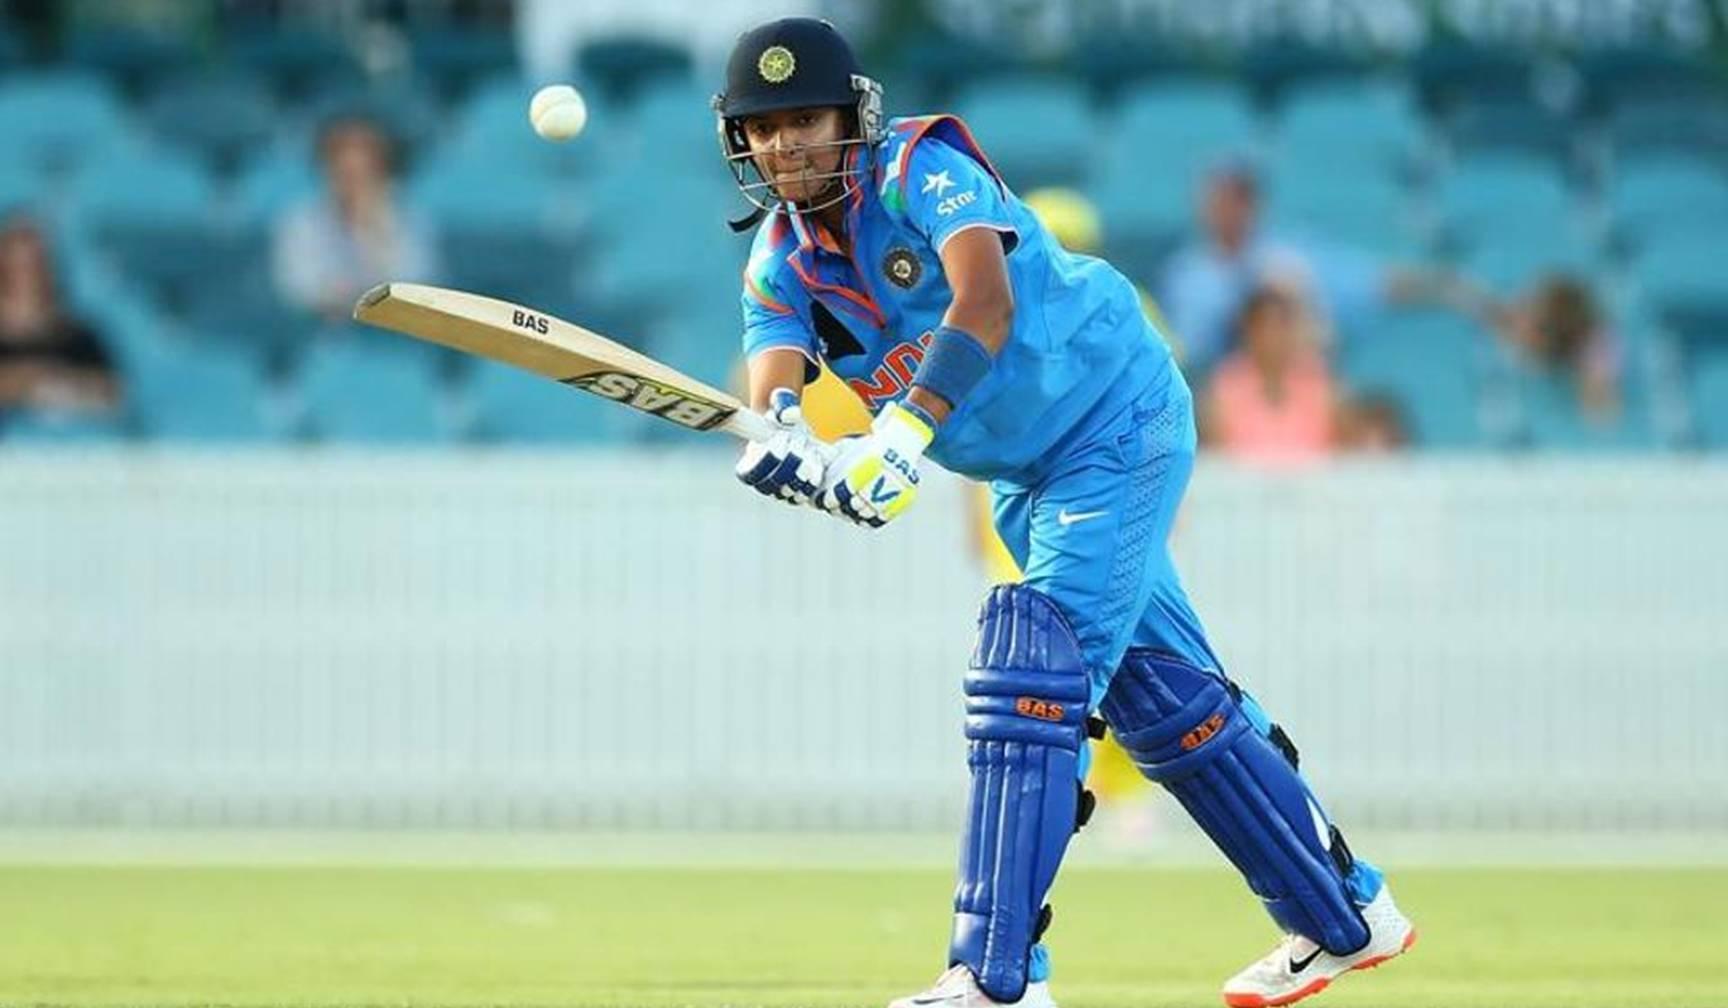 महिला क्रिकेट विश्वकप : न्यूजीलैंड ने टॉस जीतकर भारत को दी बैटिंग